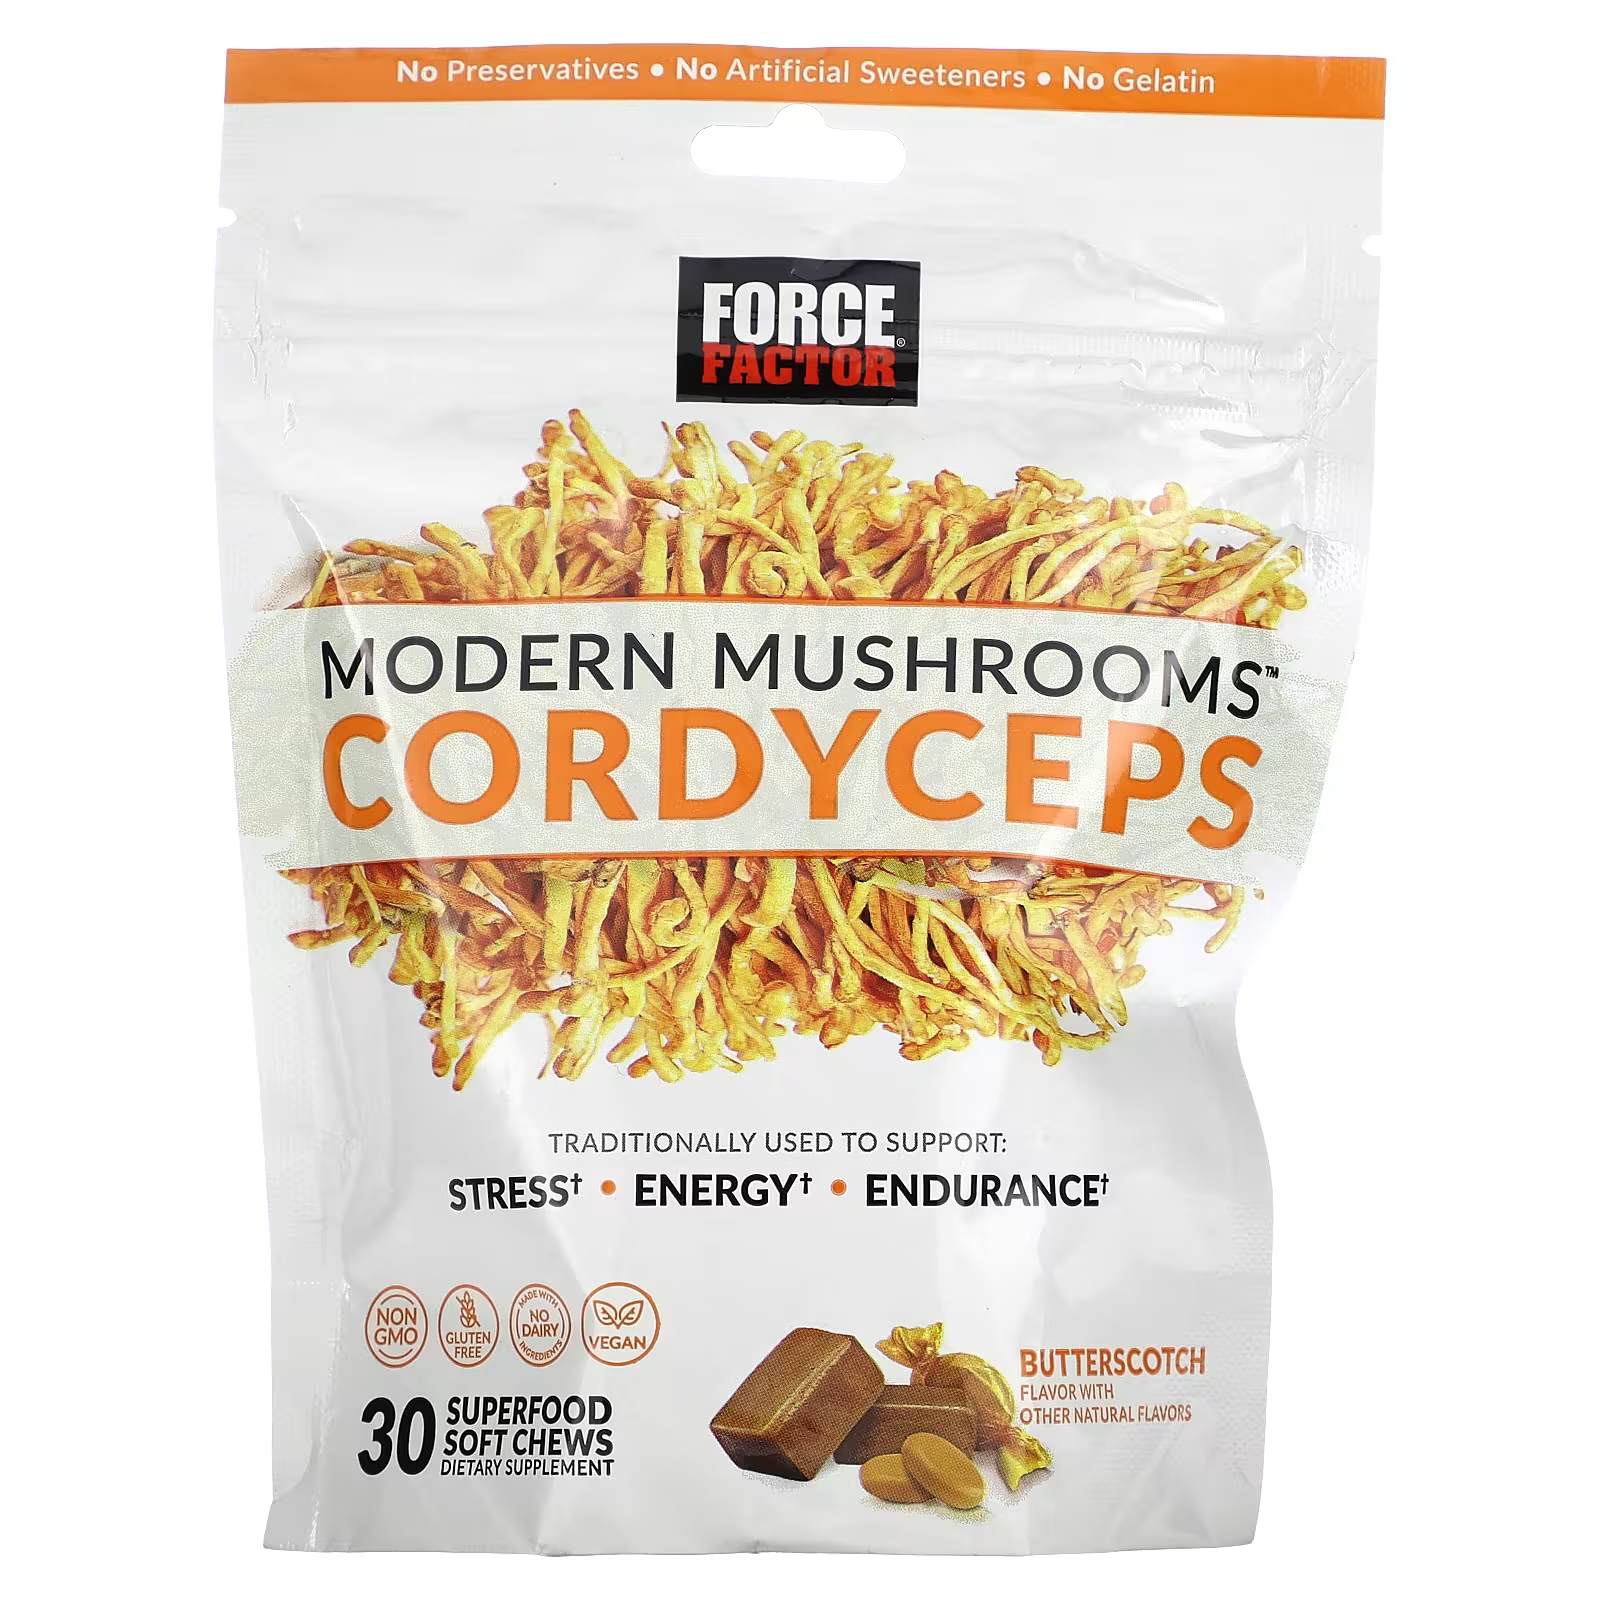 Force Factor Modern Mushrooms Cordyceps Butterscotch 30 суперпродуктов Мягкие жевательные конфеты